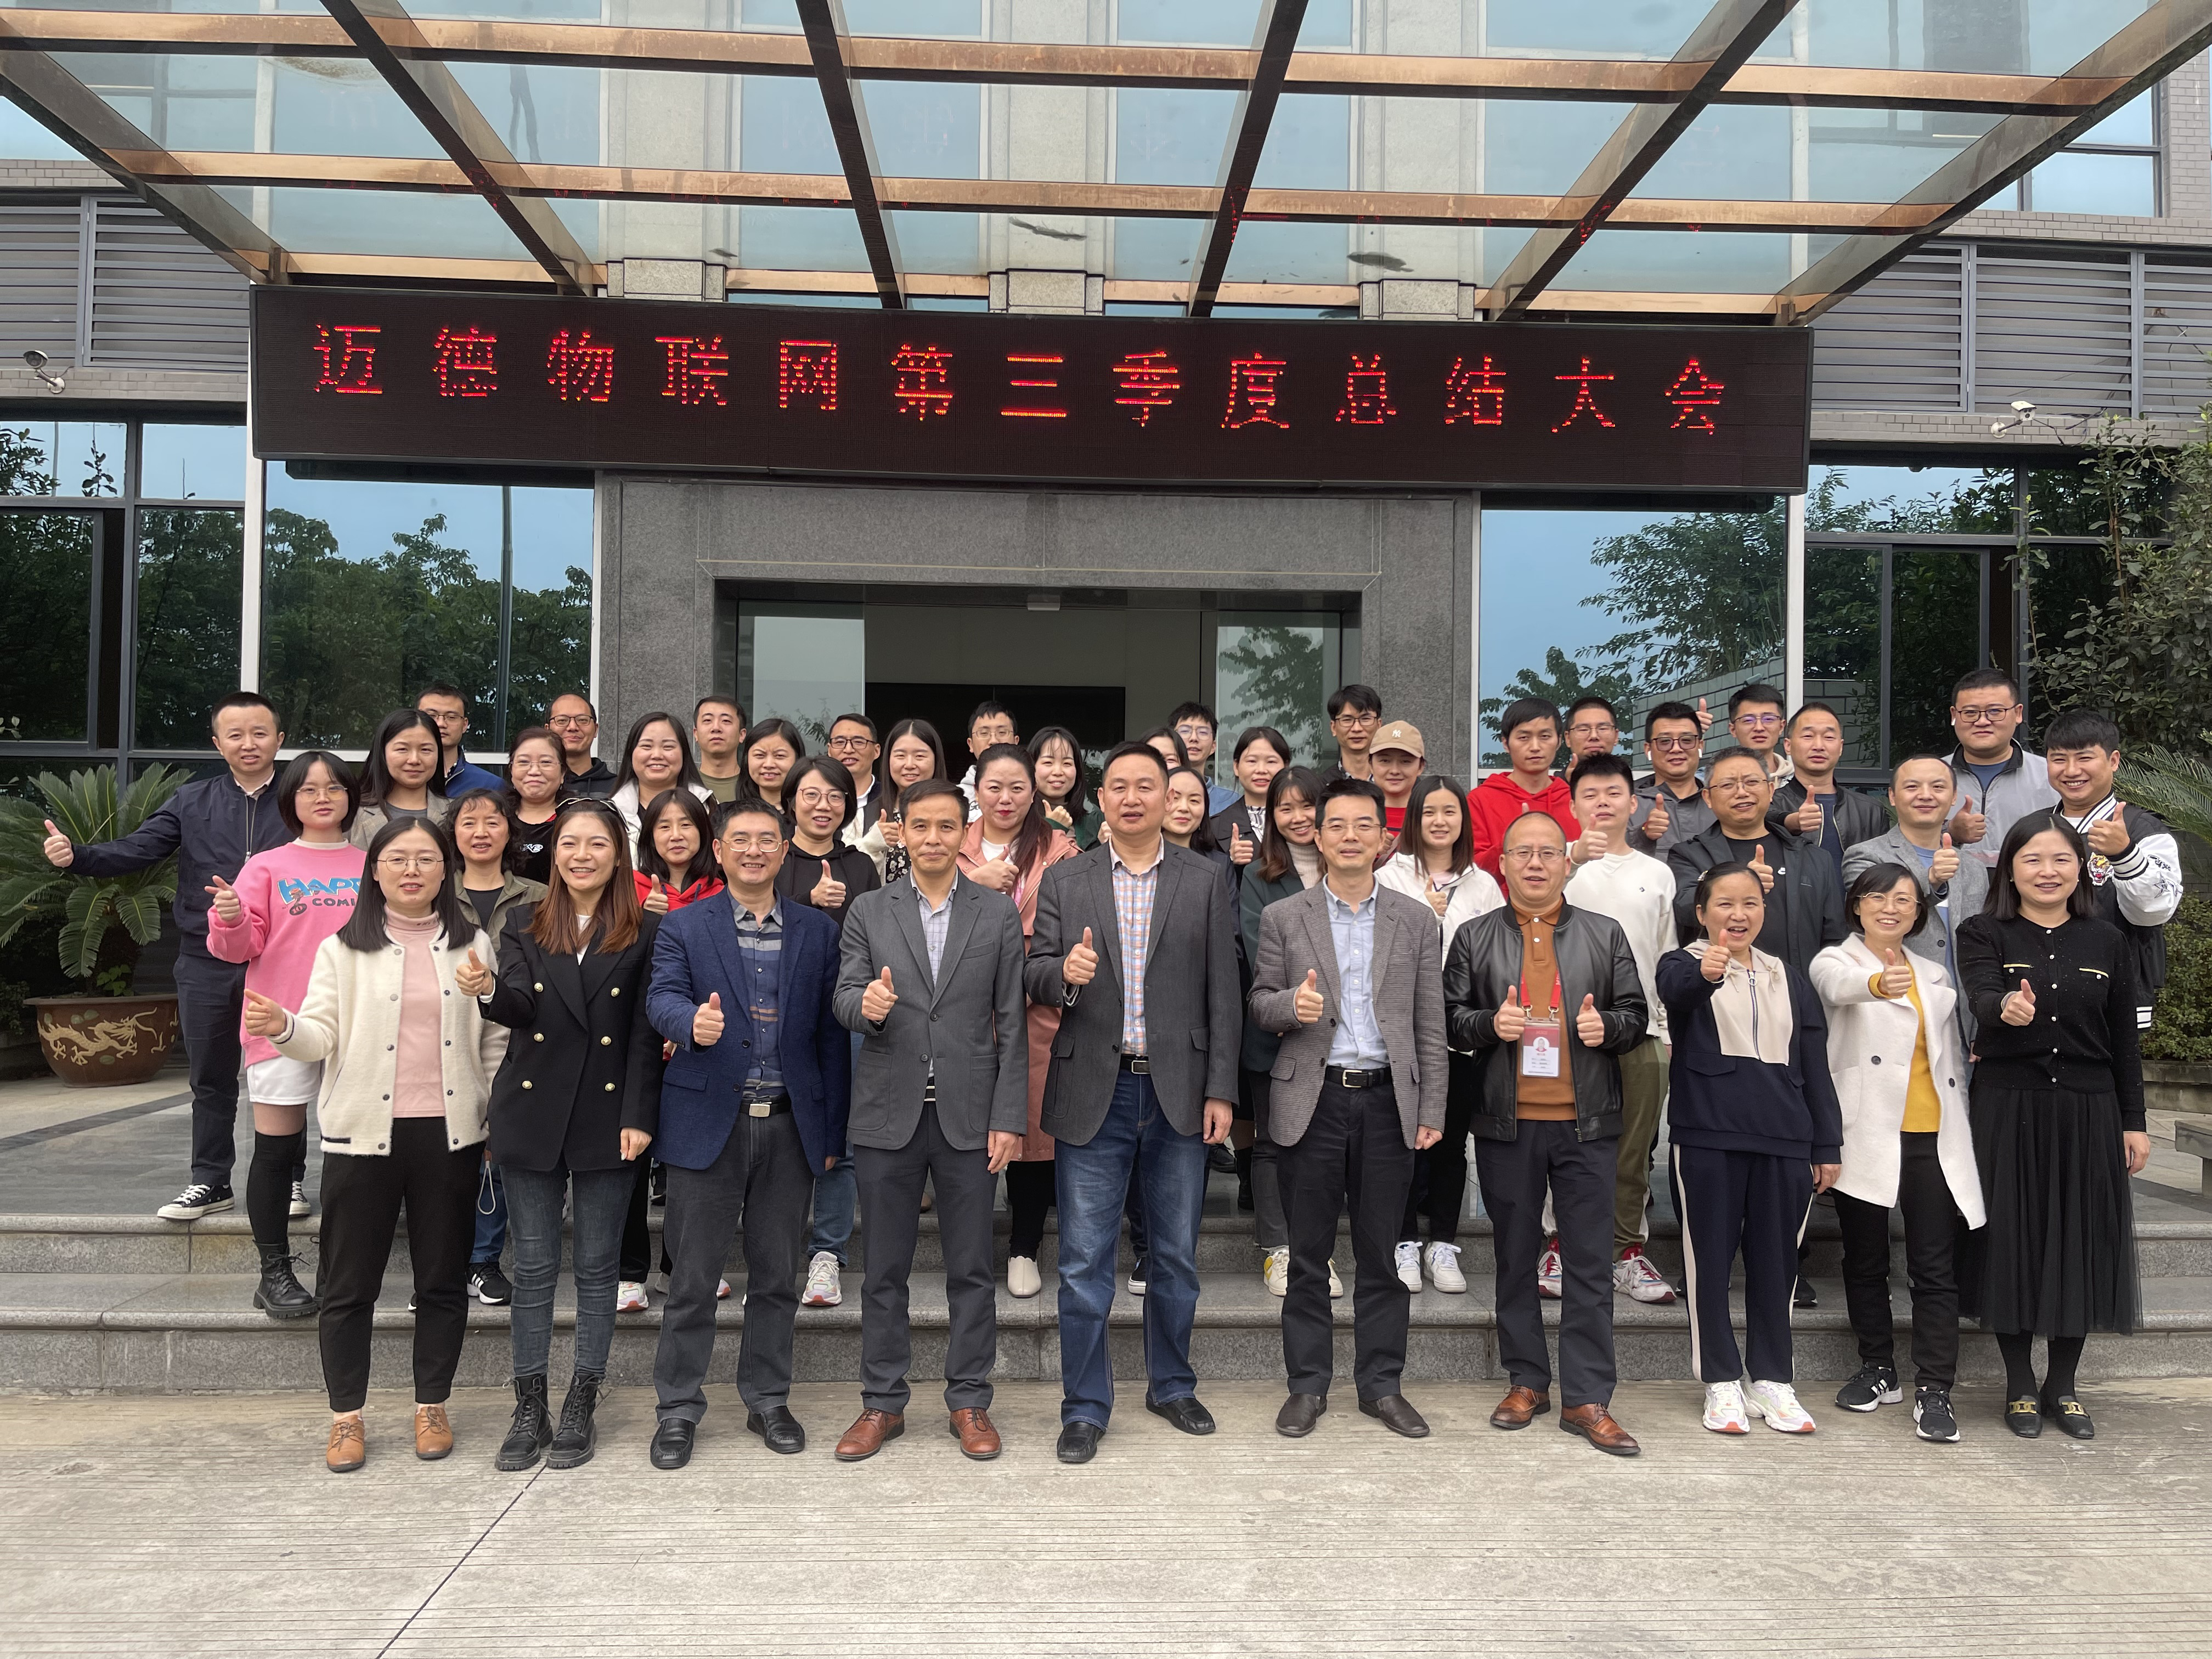 Felicitări calde companiei Chengdu Mind reuniunea de rezumat al treilea trimestru a avut loc cu succes